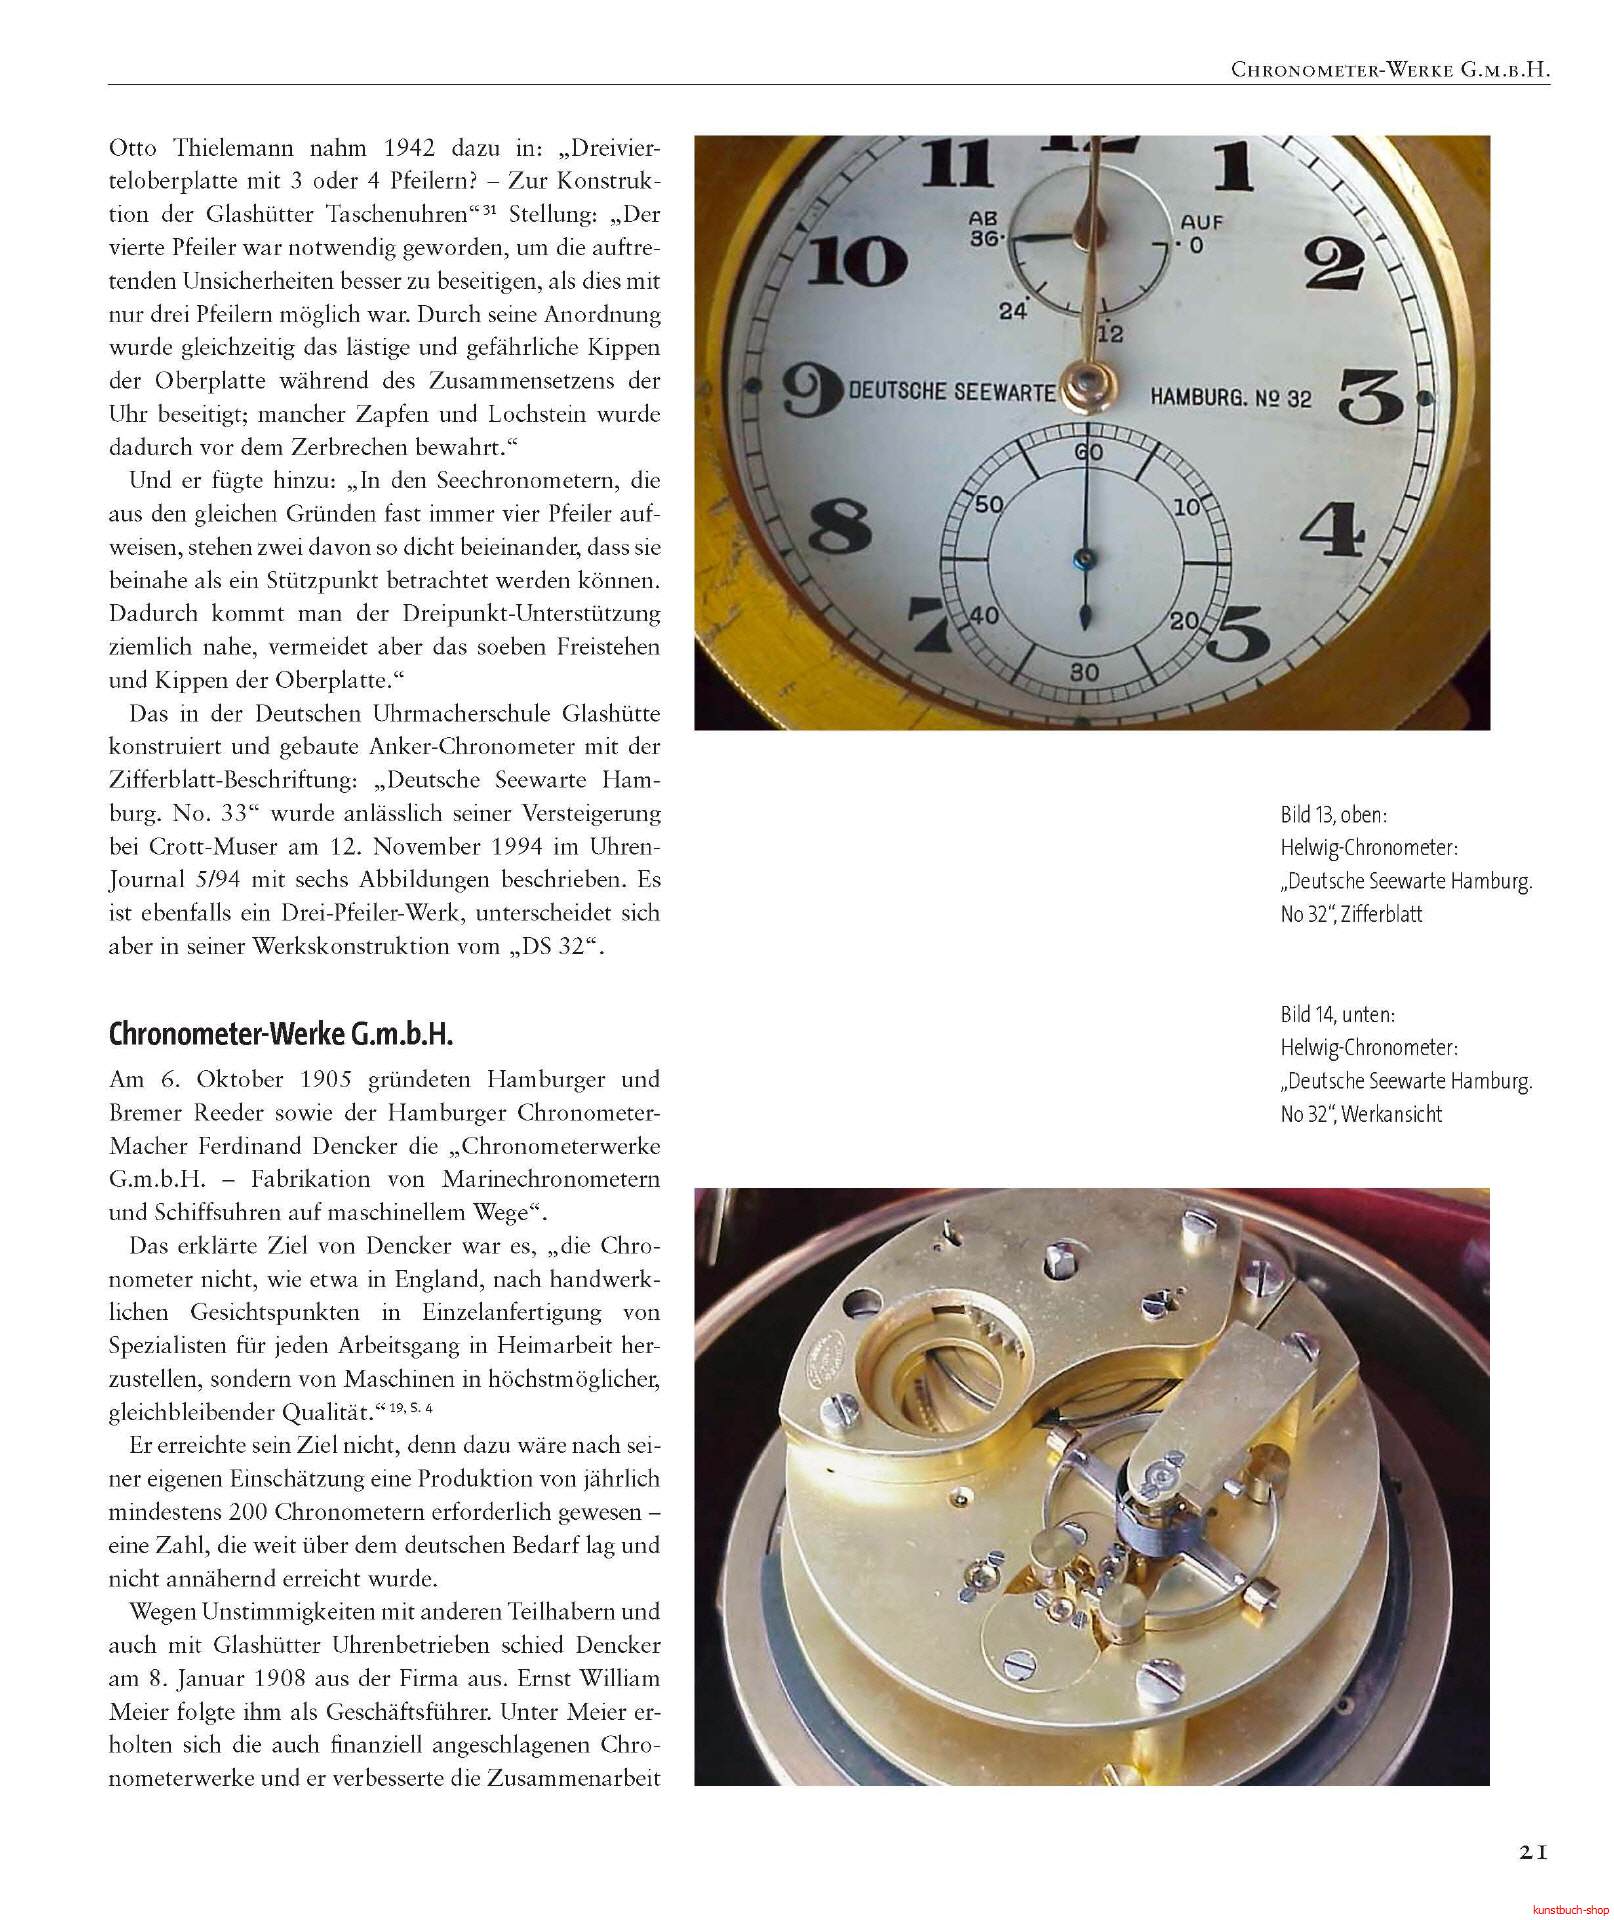 Das Deutsche Einheits-Chronometer